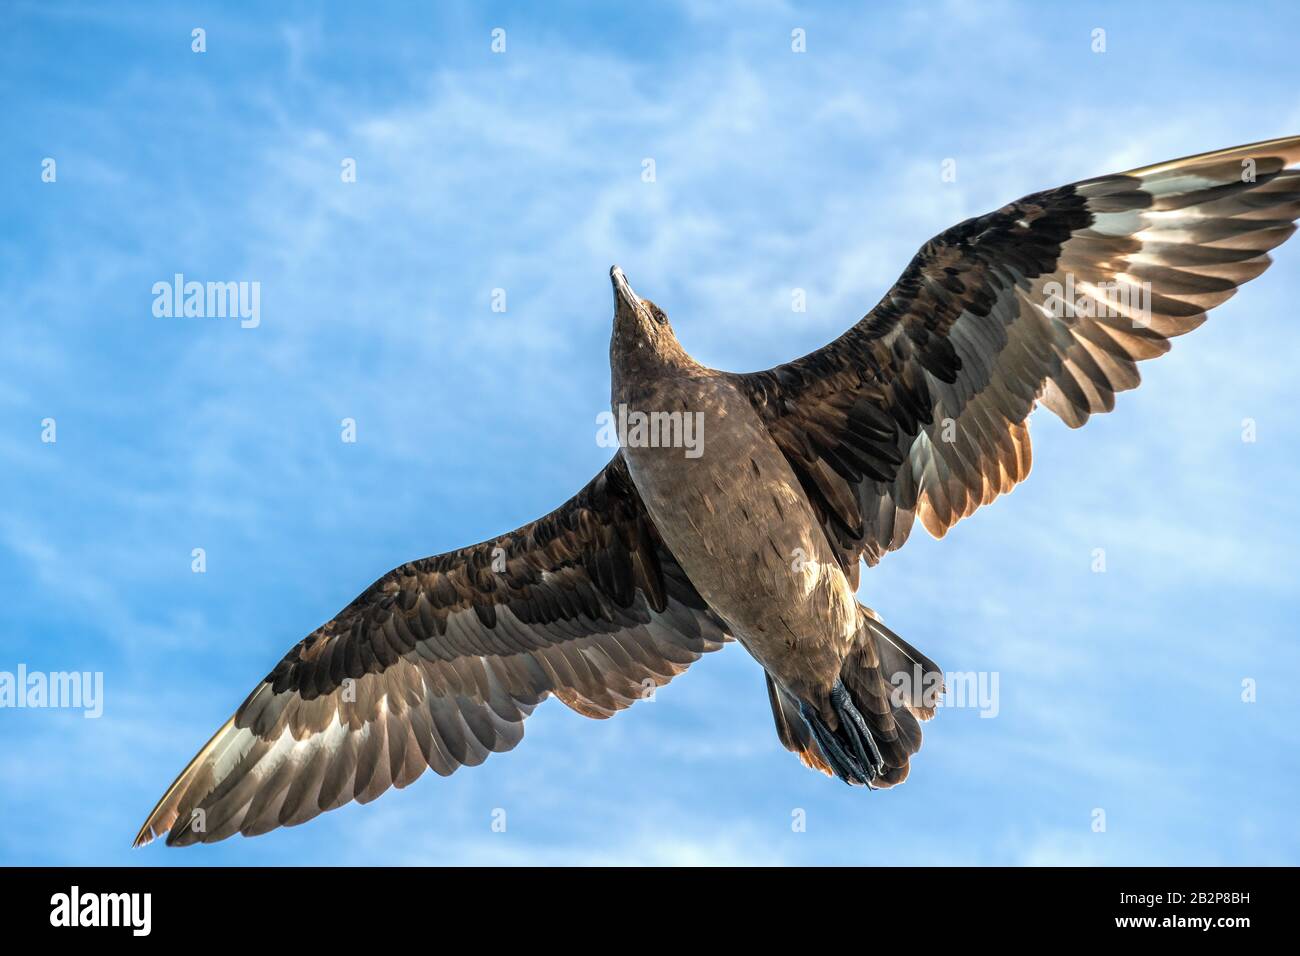 Great Skua im Flug auf blauem Himmel Hintergrund. Wissenschaftlicher Name: Catharacta skua. Untere Ansicht. Stockfoto